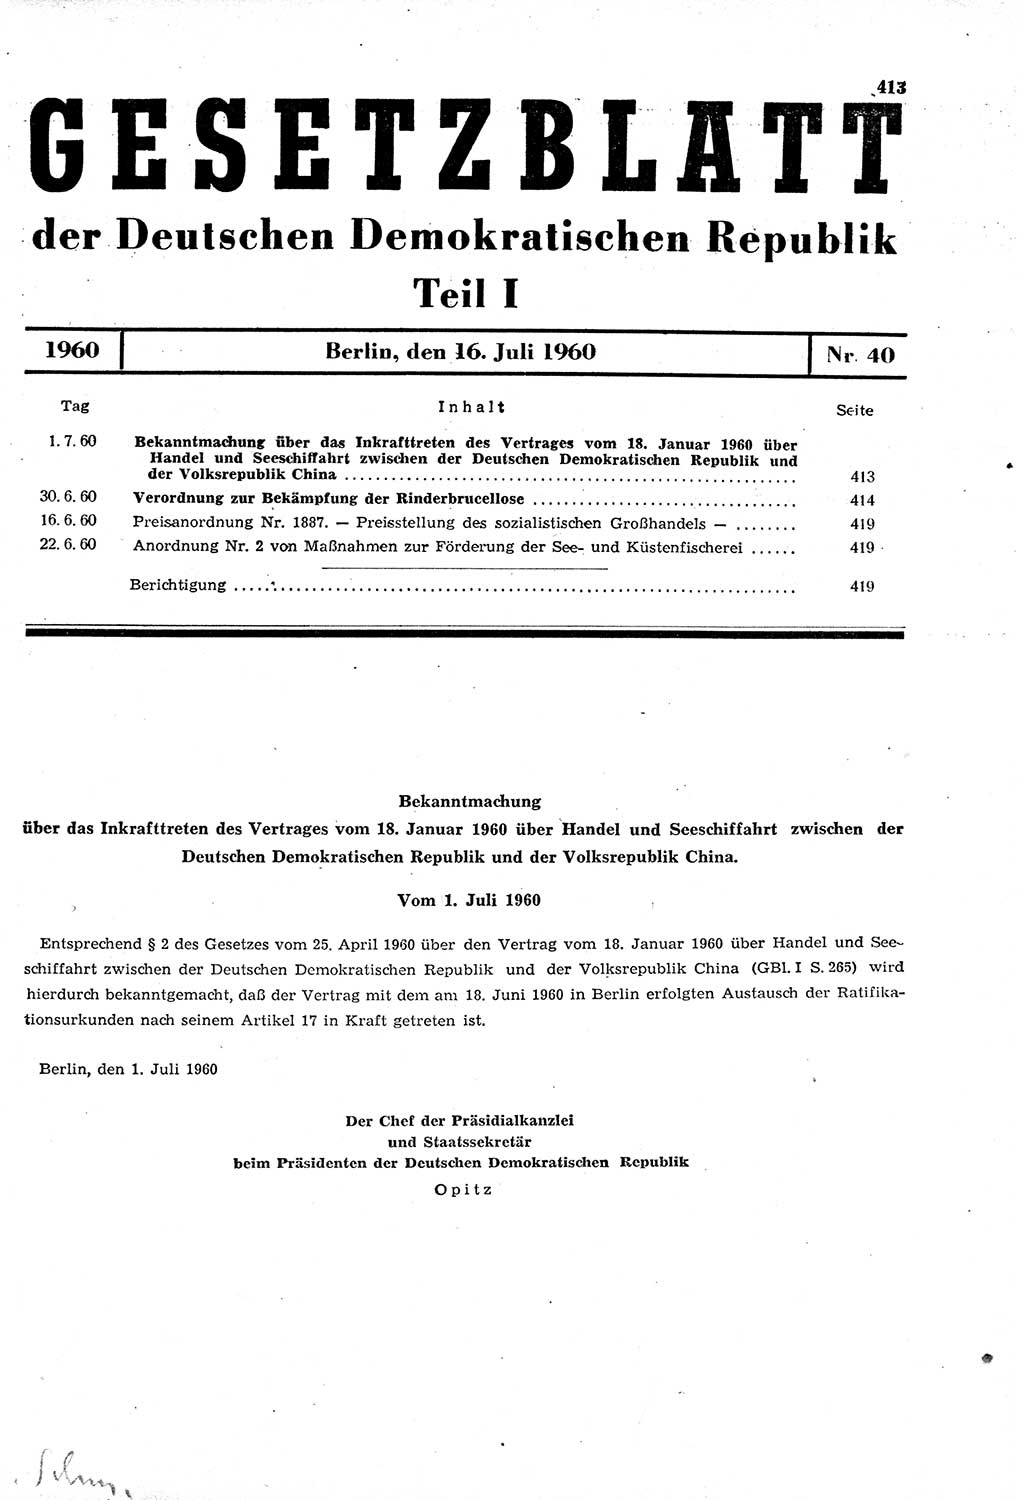 Gesetzblatt (GBl.) der Deutschen Demokratischen Republik (DDR) Teil Ⅰ 1960, Seite 413 (GBl. DDR Ⅰ 1960, S. 413)